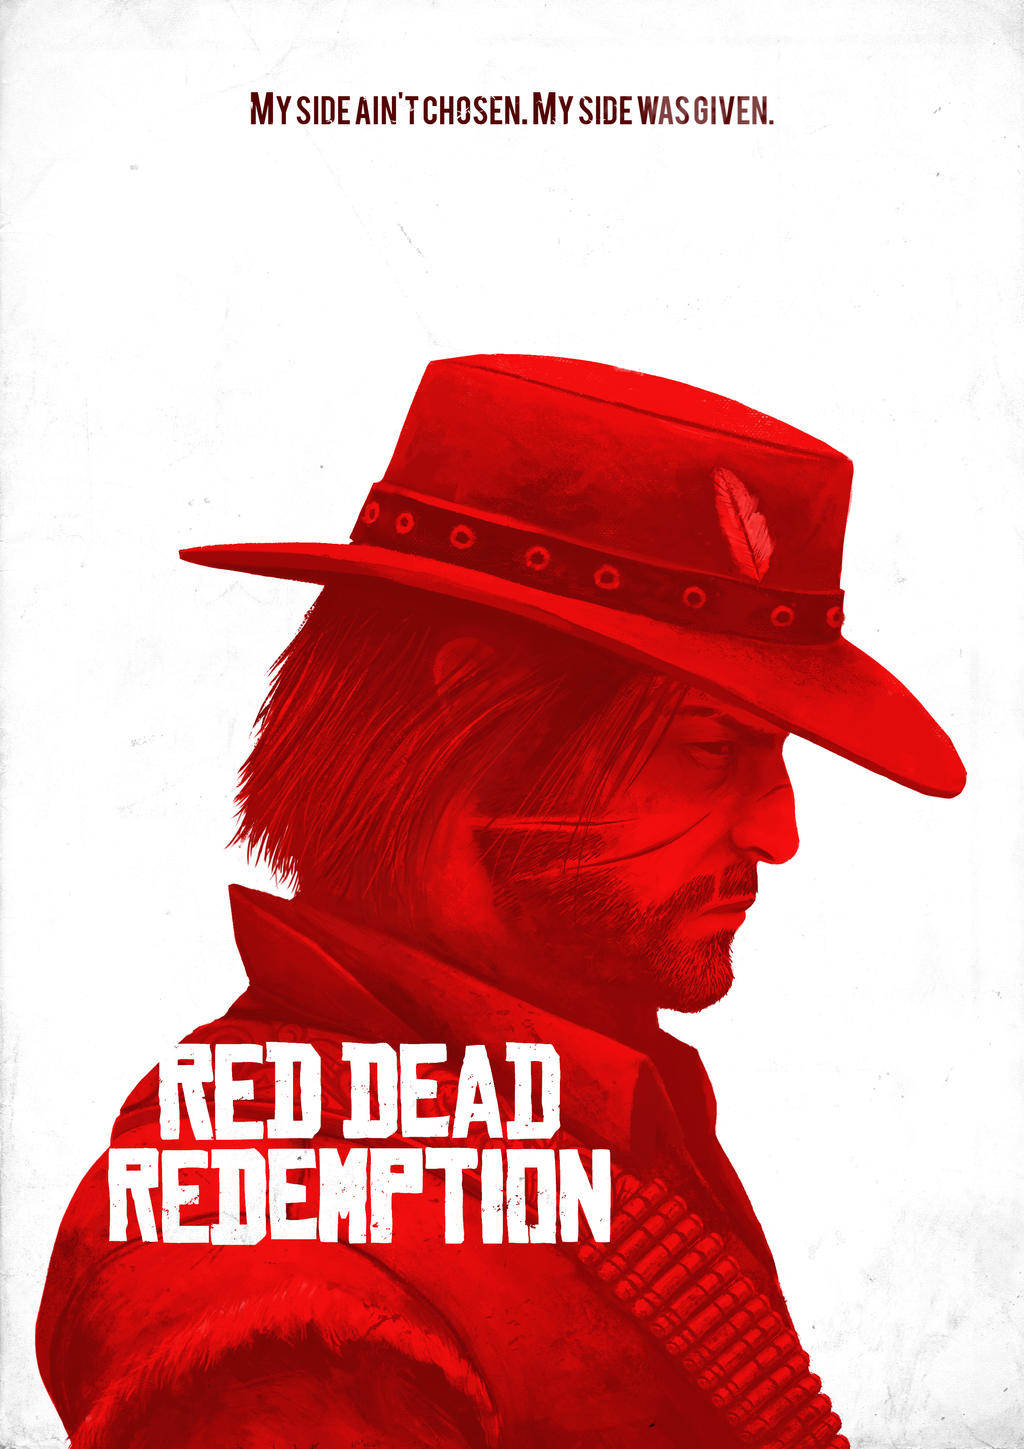 Red Dead Redemption 2 - Wallpaper by 3Demerzel on DeviantArt